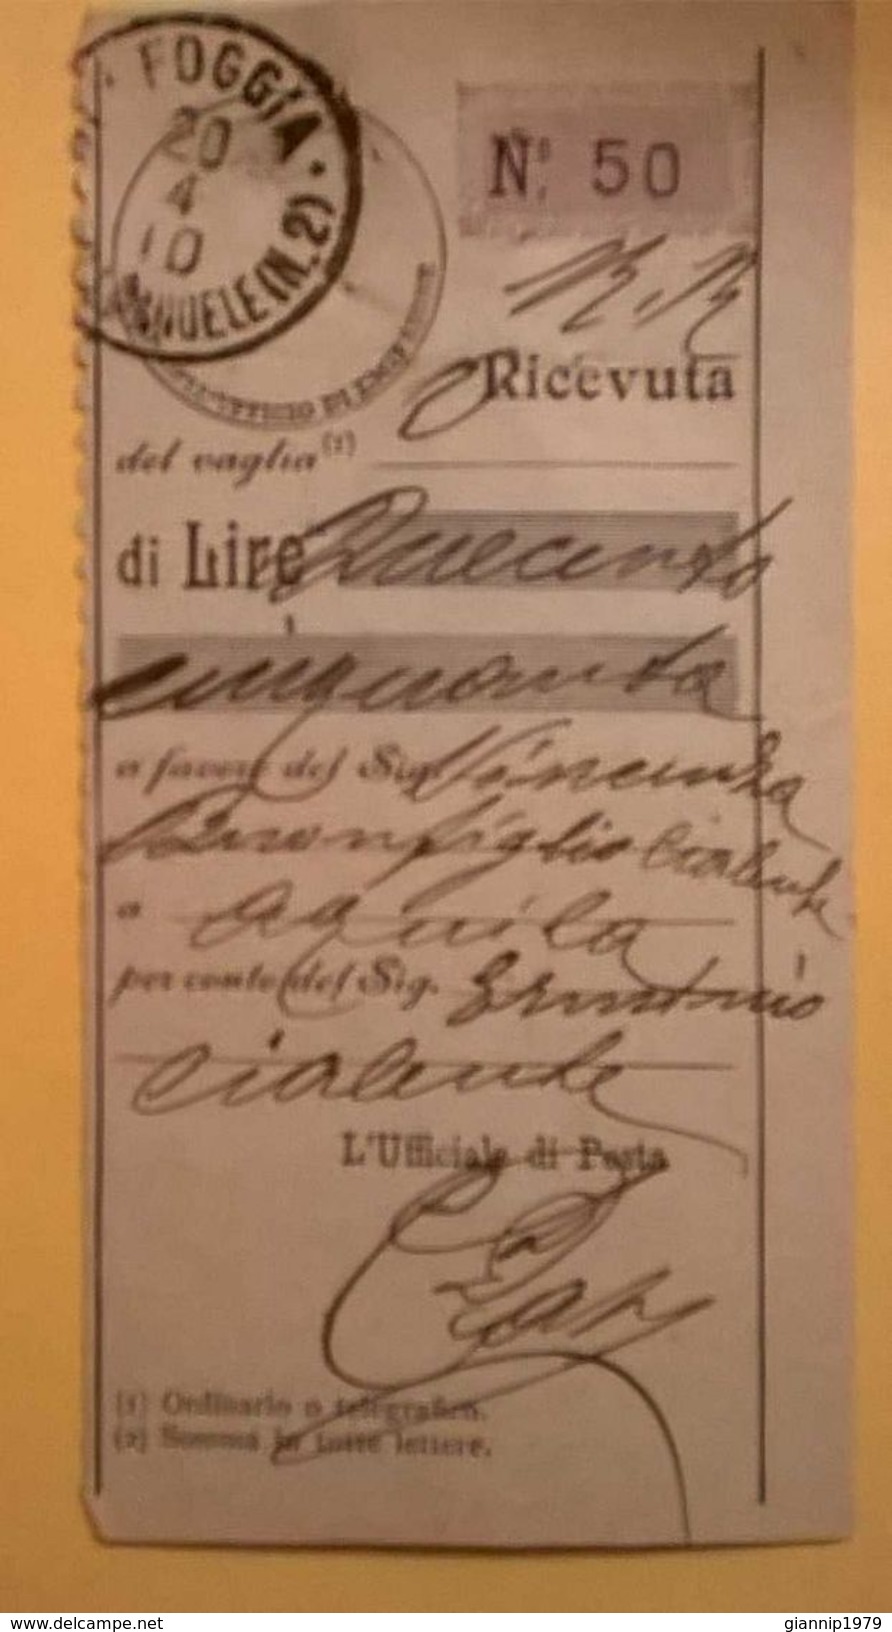 VAGLIA POSTALE RICEVUTA FOGGIA 1910 - Strafport Voor Mandaten